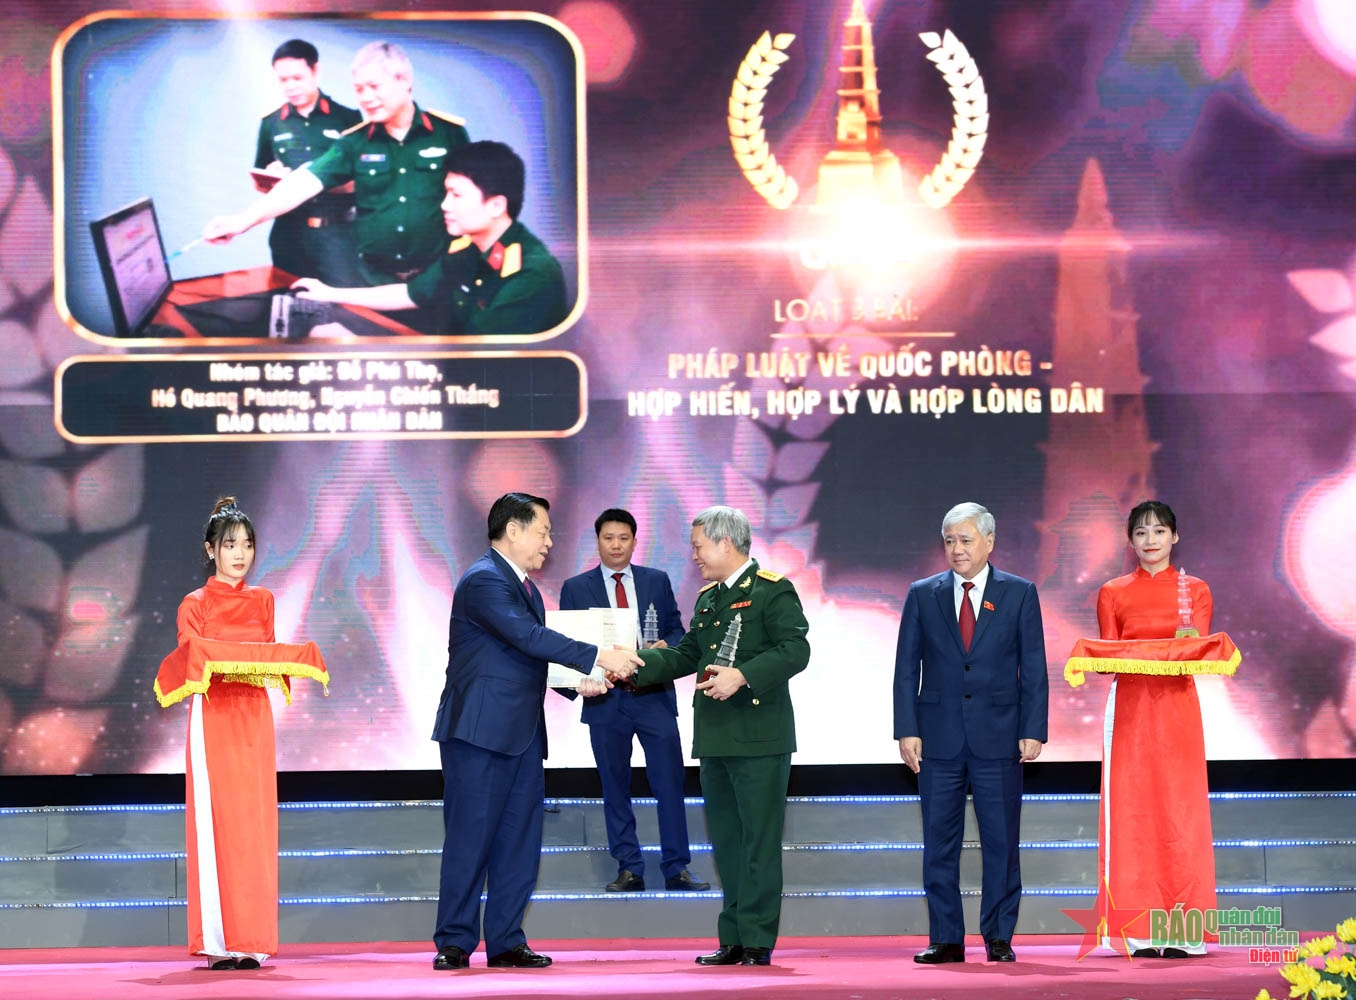 Thành công vang dội của Báo Quân đội nhân dân tại giải Báo chí quốc gia 